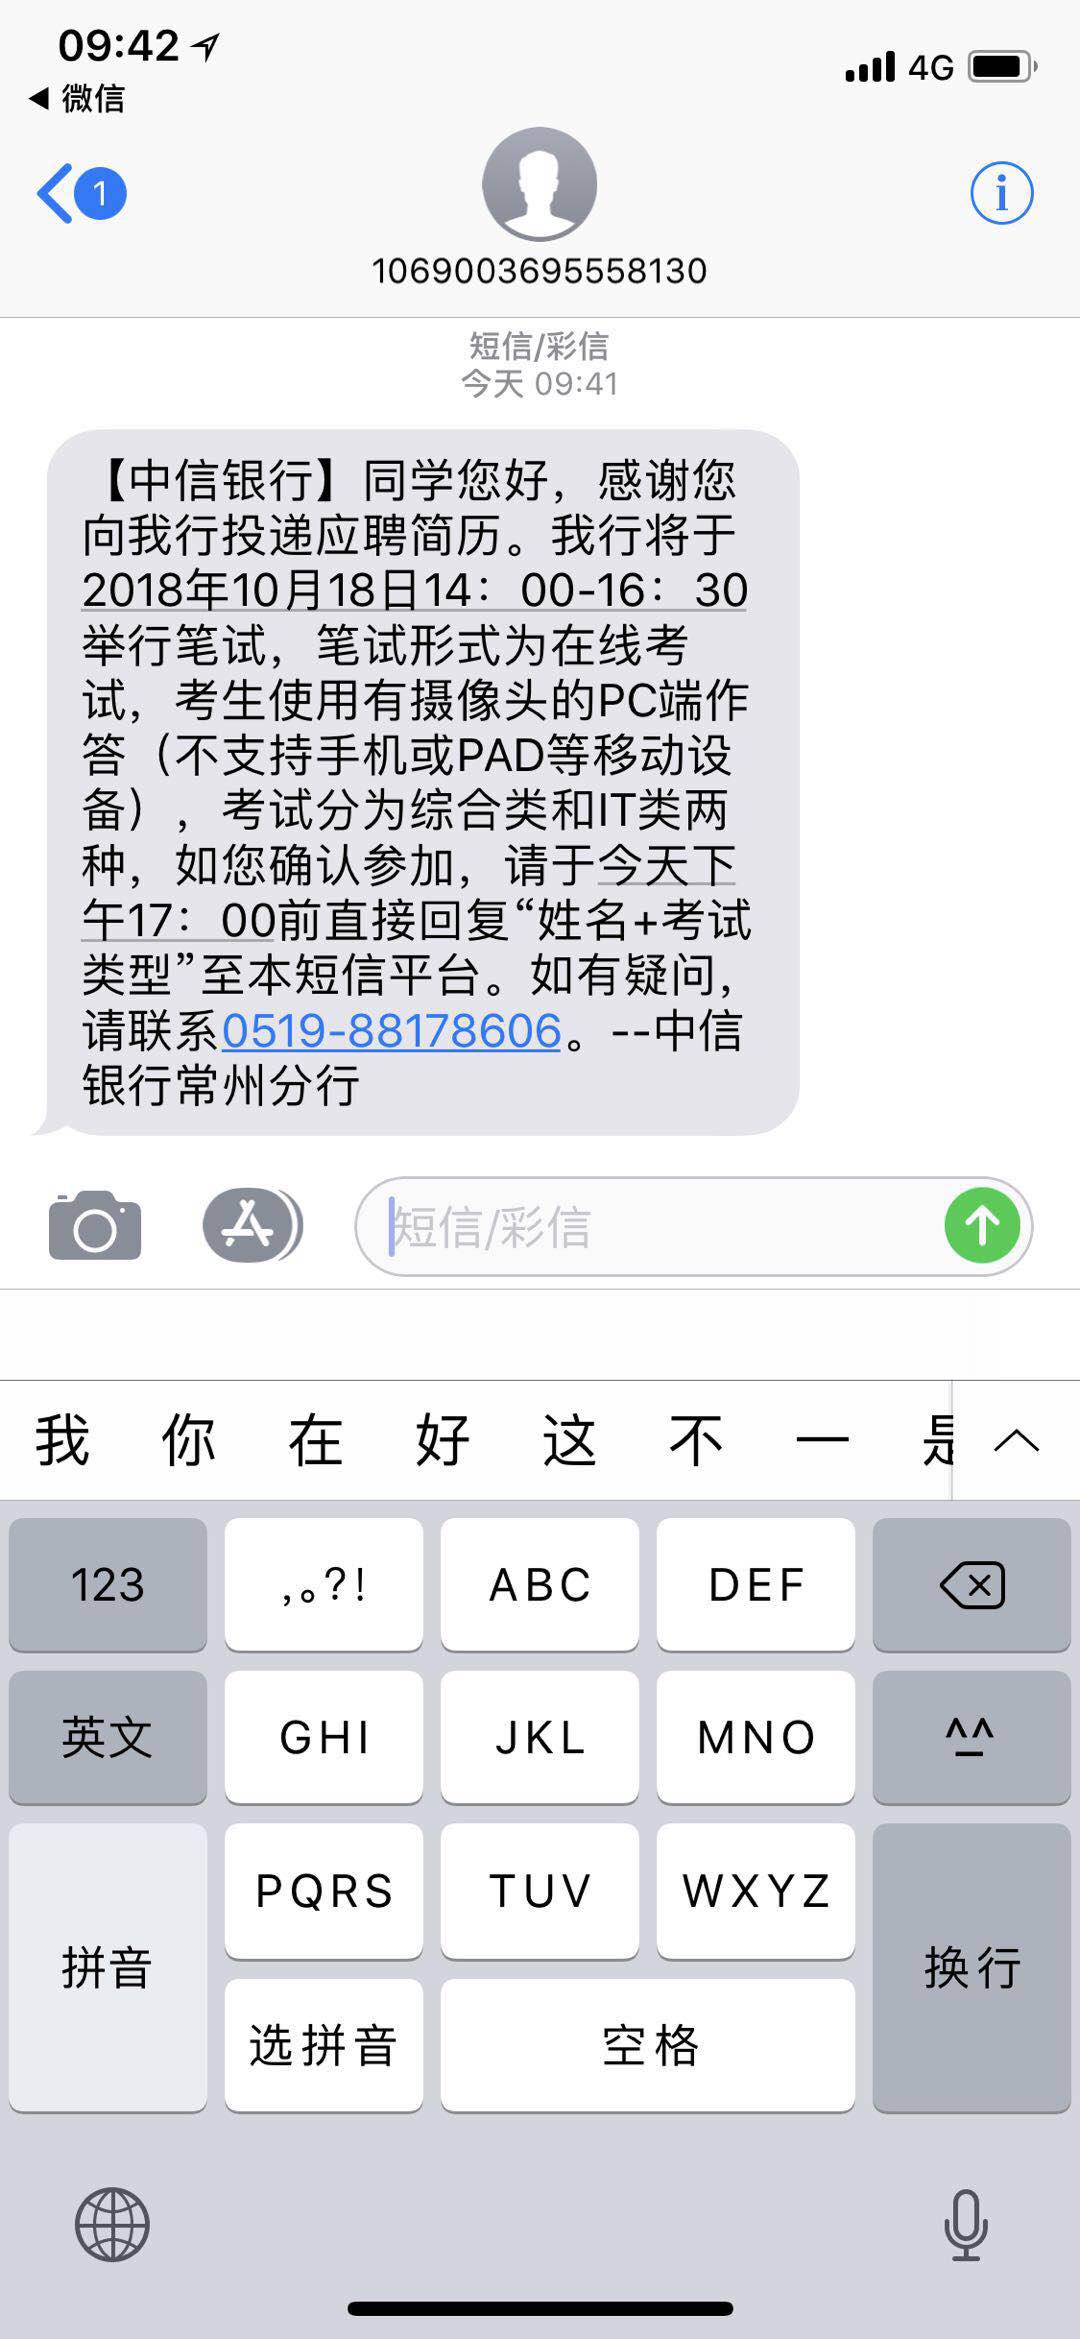 广东海事局2019年度考试录用公务员面试公告_通知公示_公考雷达